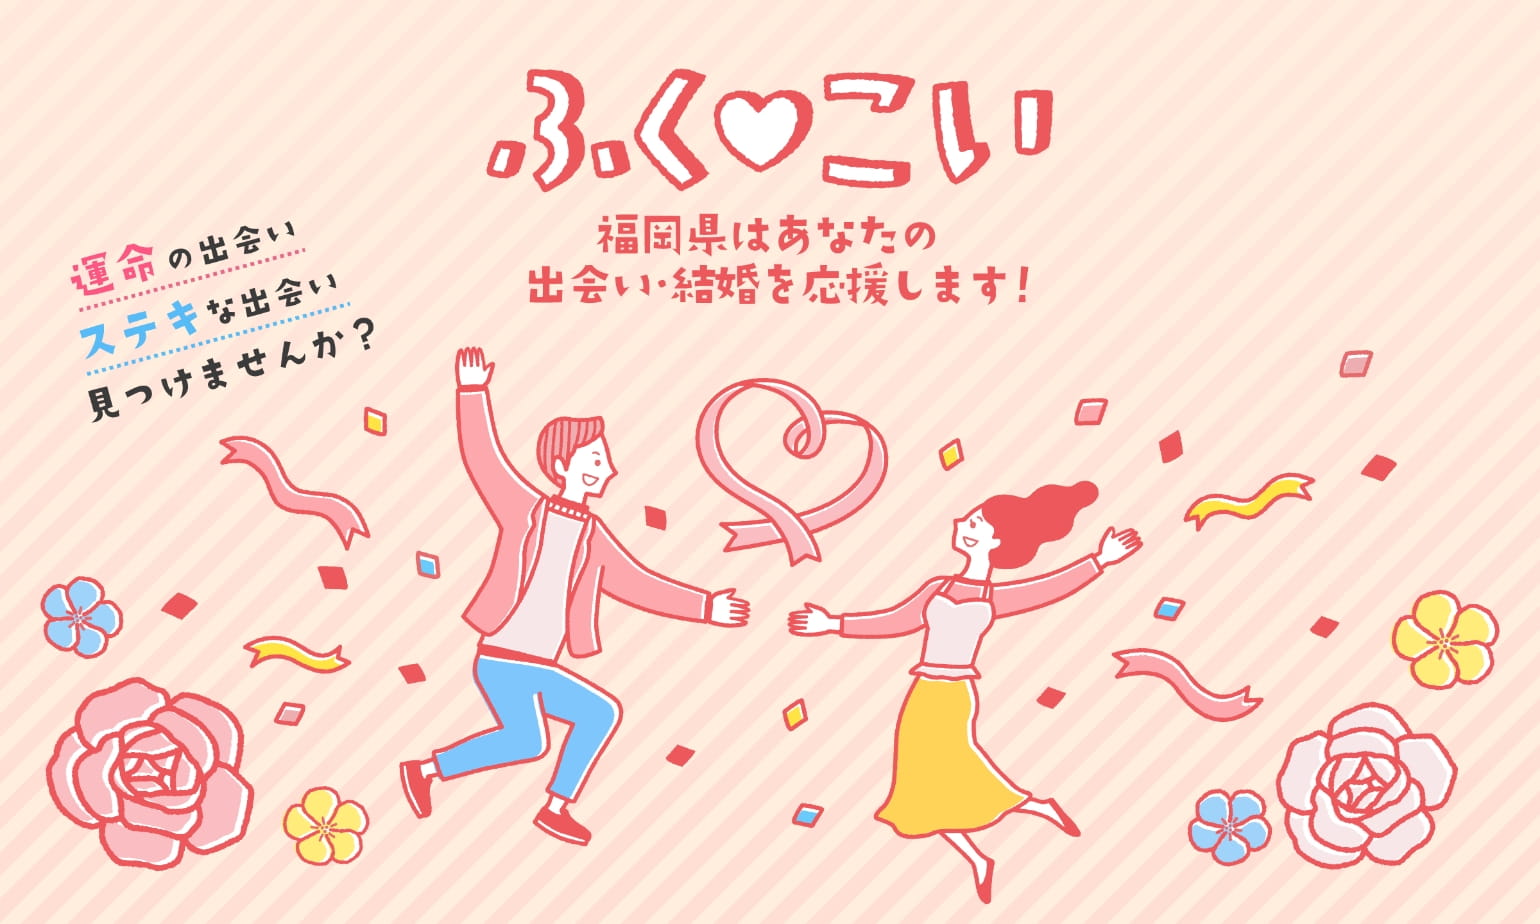 ふくこい 福岡県はあなたの出会い・結婚を応援します！